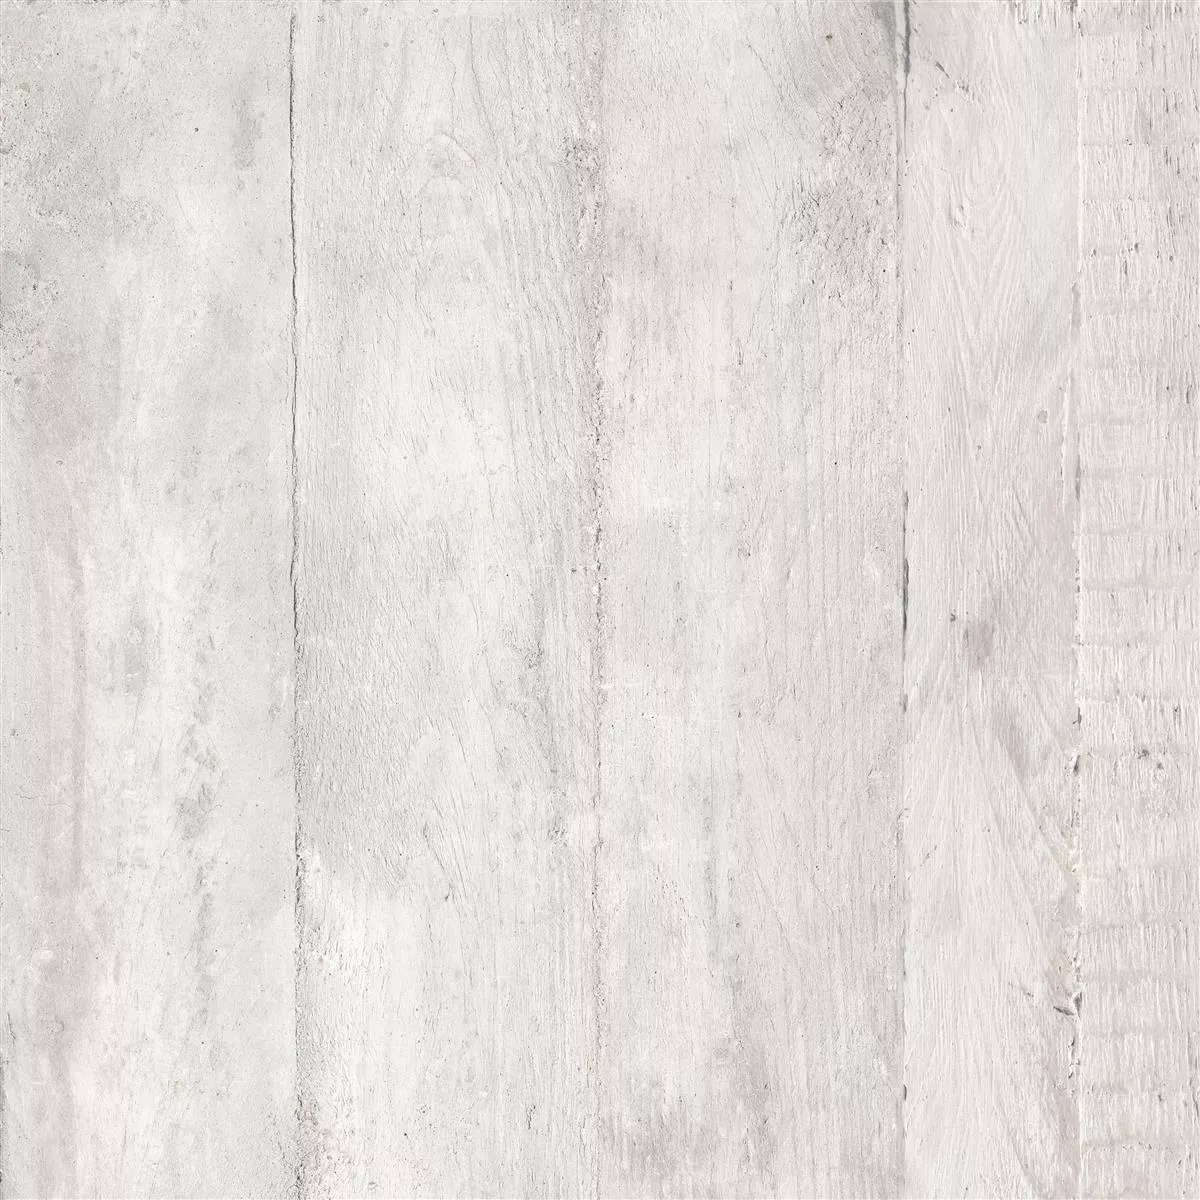 Vzorek Podlahové Dlaždice Gorki Dřevěný Vzhled 60x60cm Glazovaný Bílá